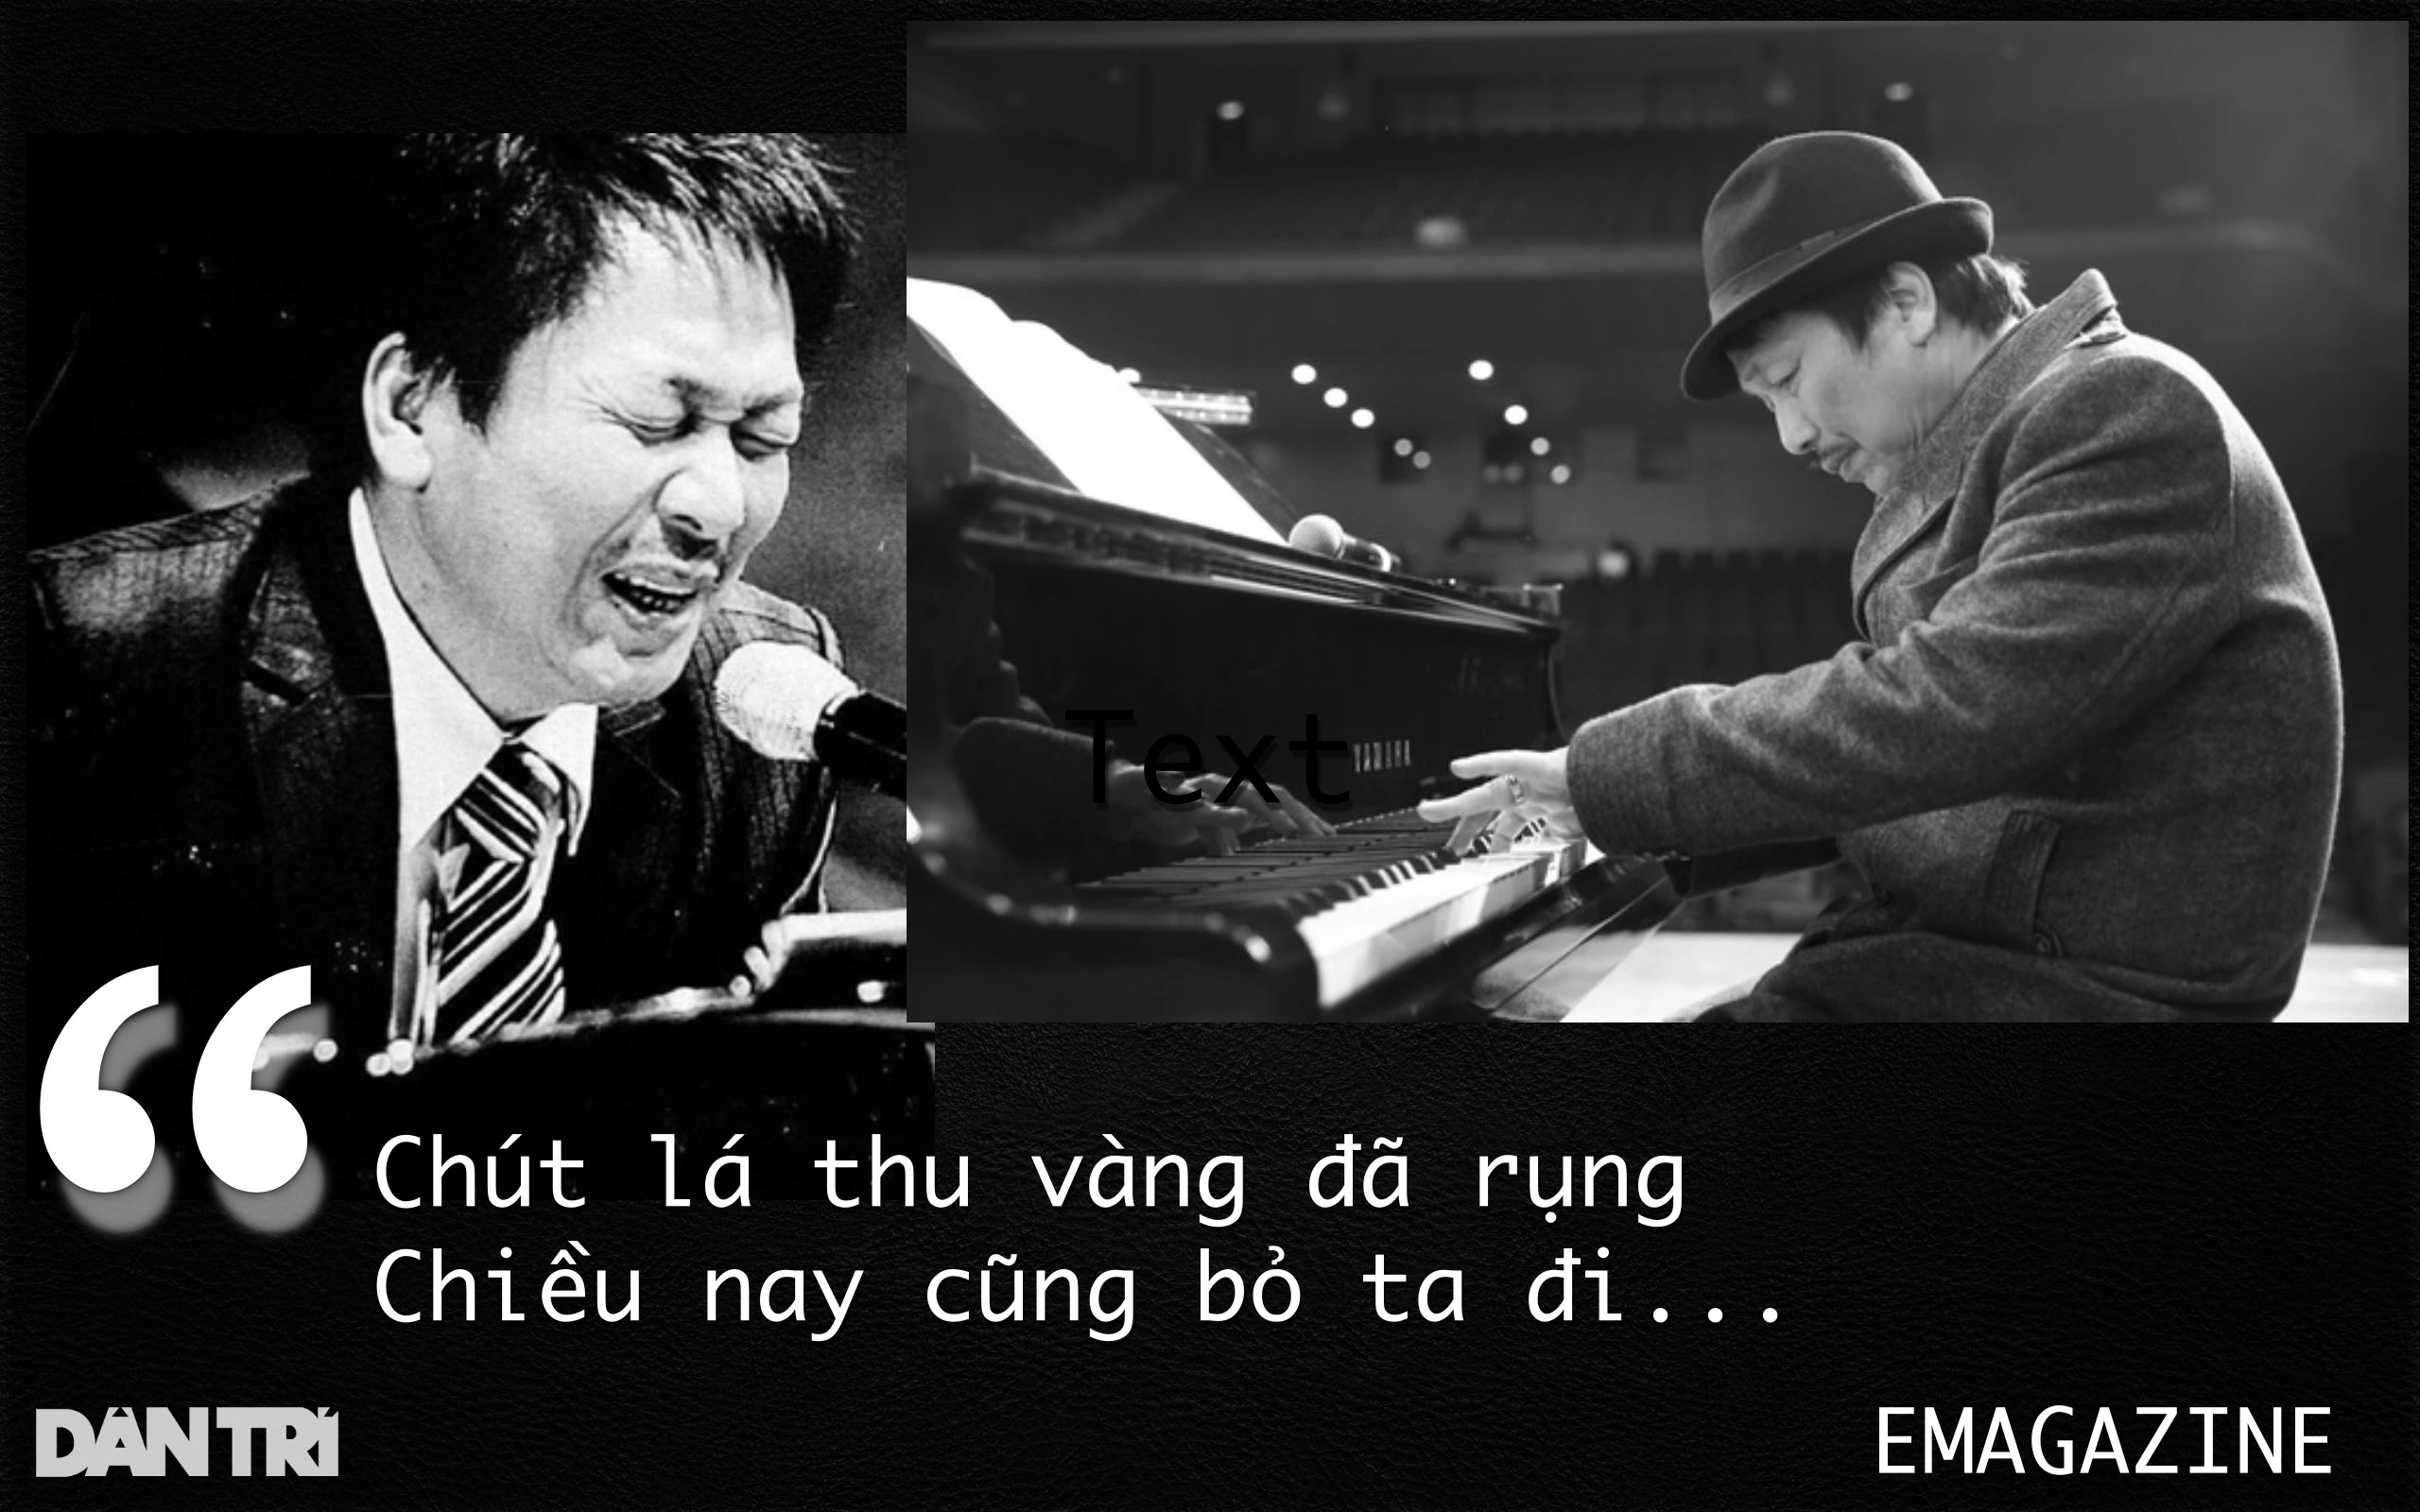 Phú Quang - người họa Hà Nội bằng nhạc đã thôi "lang thang hoài trên phố"!